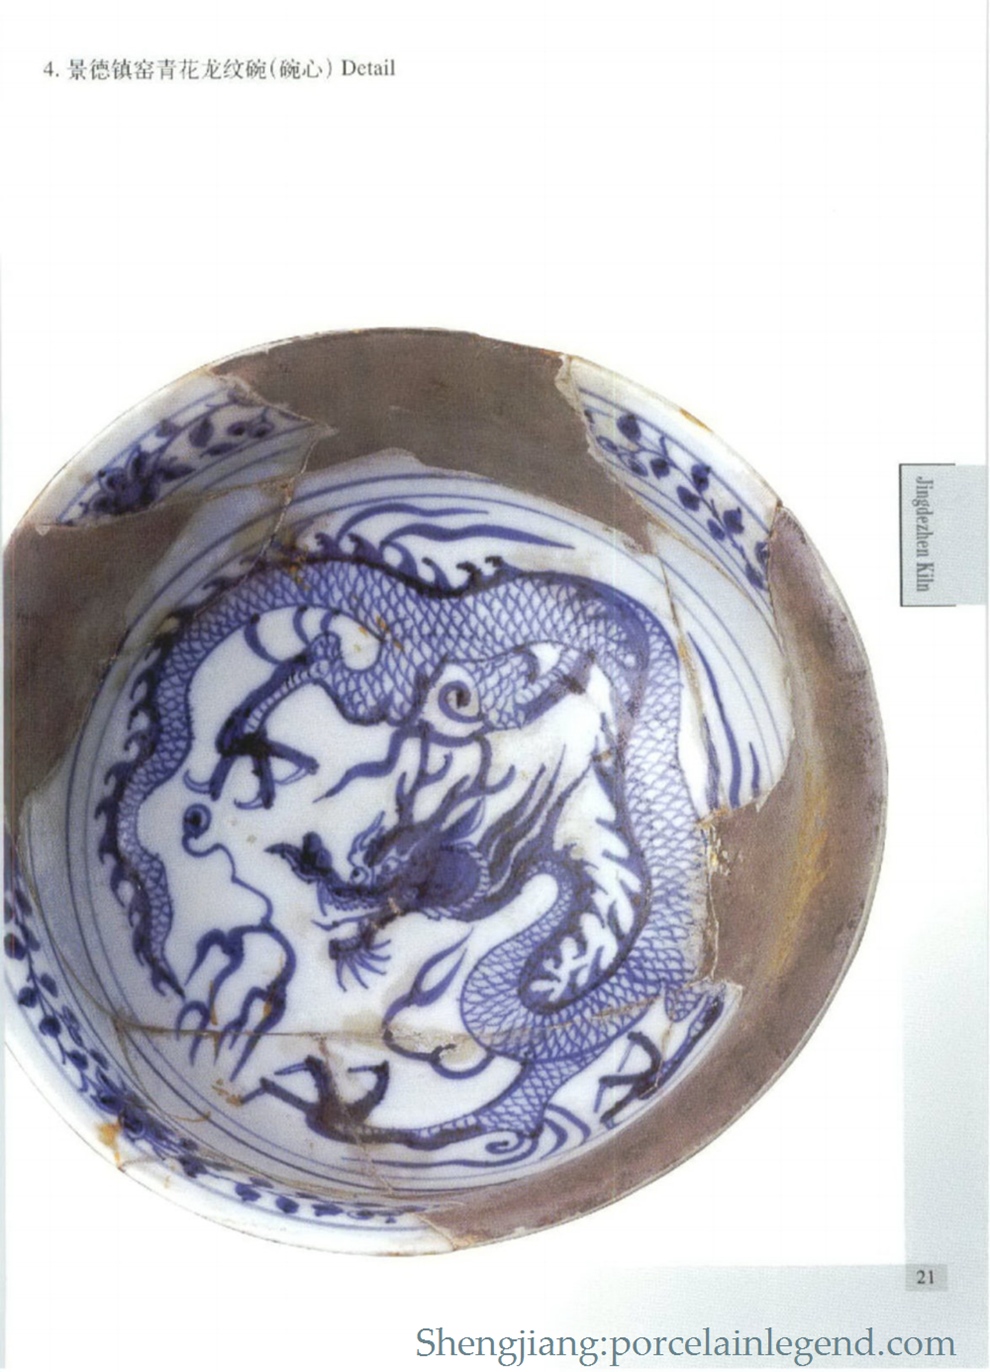 4. Jingdezhen Kiln Blue and White Dragon Bowl (Bowl Heart) Detail